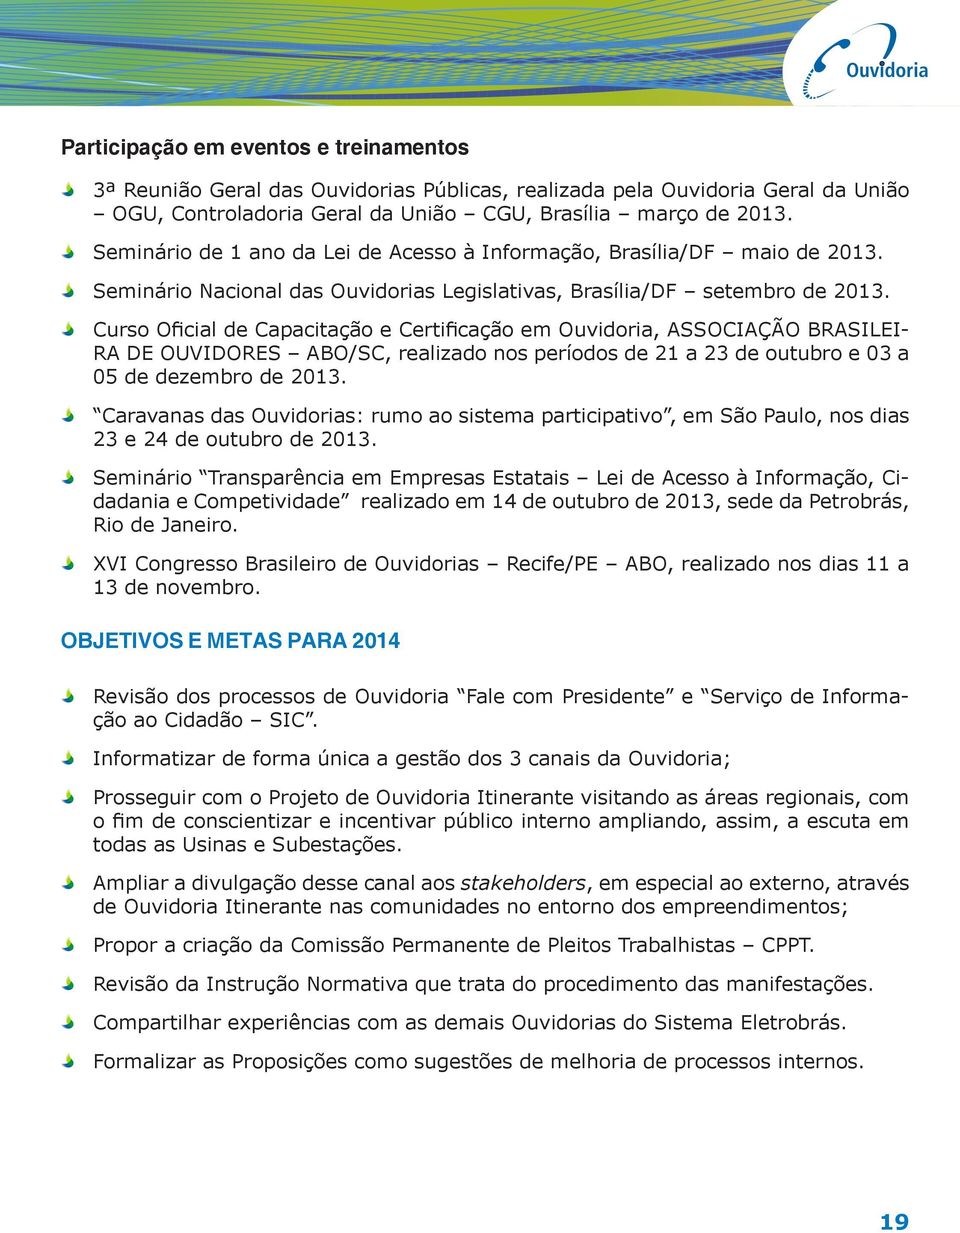 Curso Oficial de Capacitação e Certificação em Ouvidoria, ASSOCIAÇÃO BRASILEI- RA DE OUVIDORES ABO/SC, realizado nos períodos de 21 a 23 de outubro e 03 a 05 de dezembro de 2013.